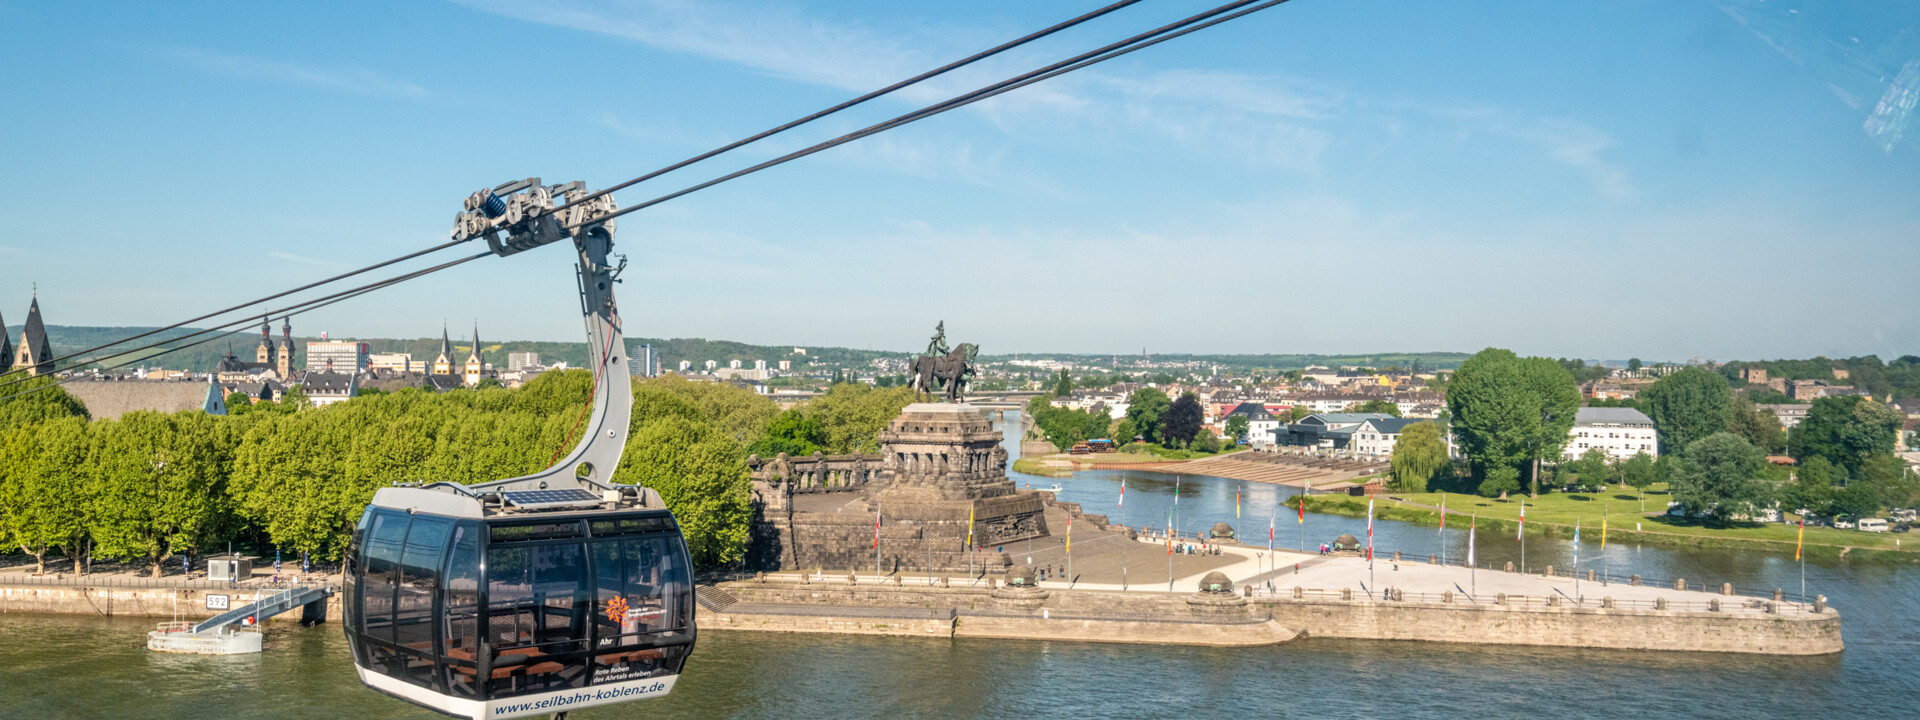 Panoramakabine der Seilbahn Koblenz mit dem Rhein, der Mosel und dem Deutschen Eck im Hintergrund ©Koblenz-Touristik GmbH, Dominik Ketz